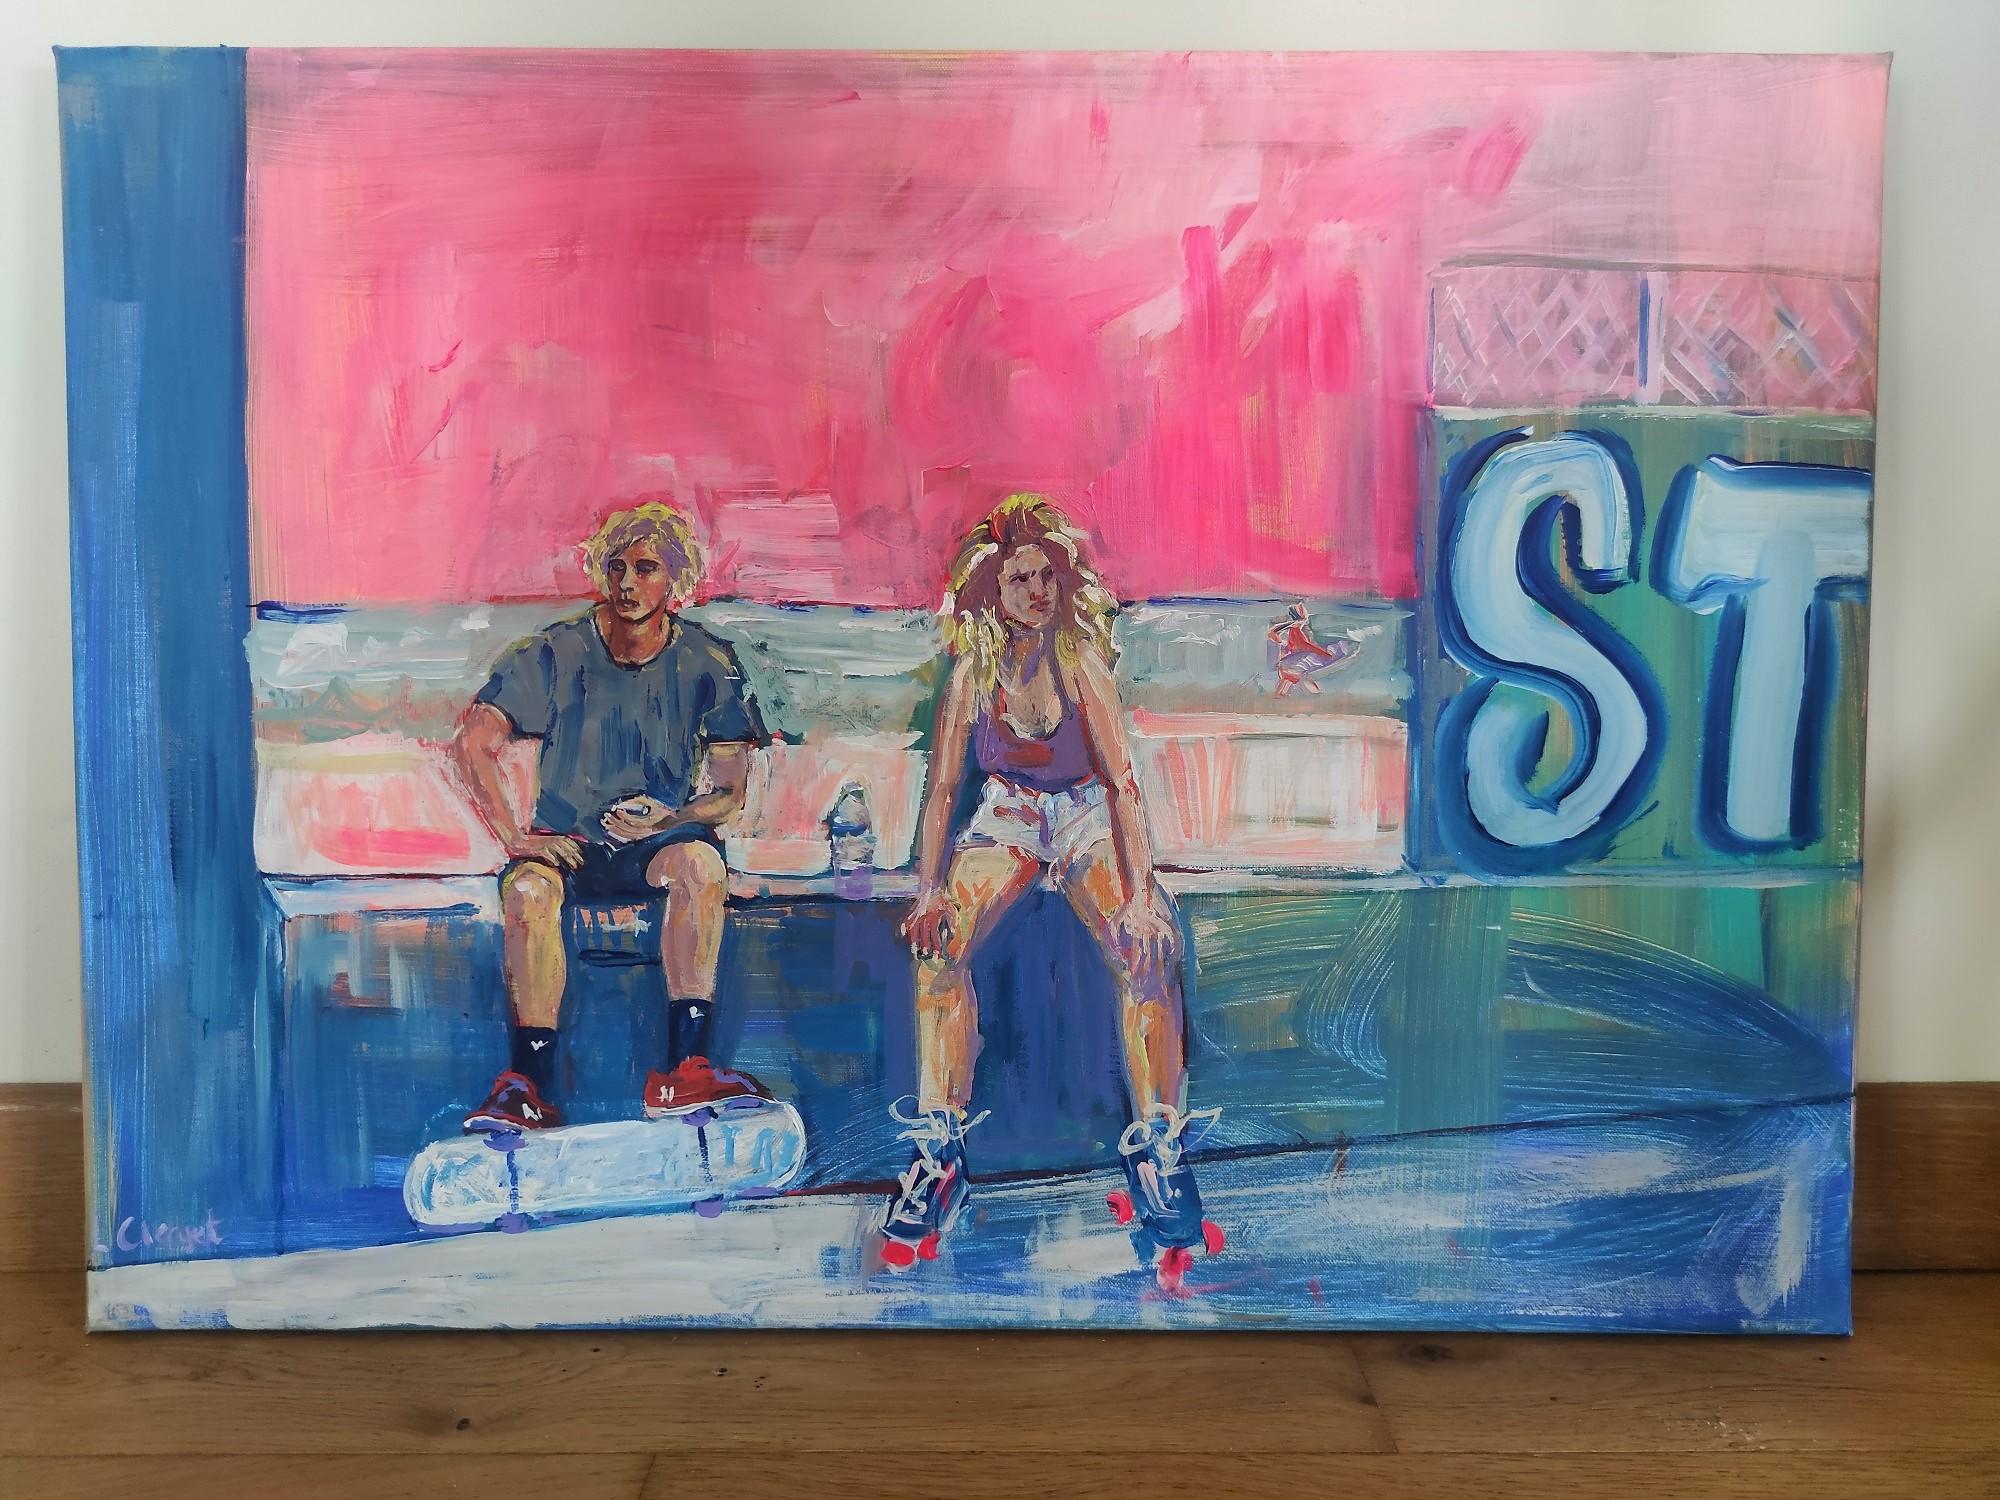 
Cette peinture est tirée de la série 'Rollers & Skate'. Elle est réalisée avec de la peinture acrylique alla prima sur une toile de coton. La peinture s'inspire de la culture californienne du skate et du roller des années 70.

Linda Clerget se